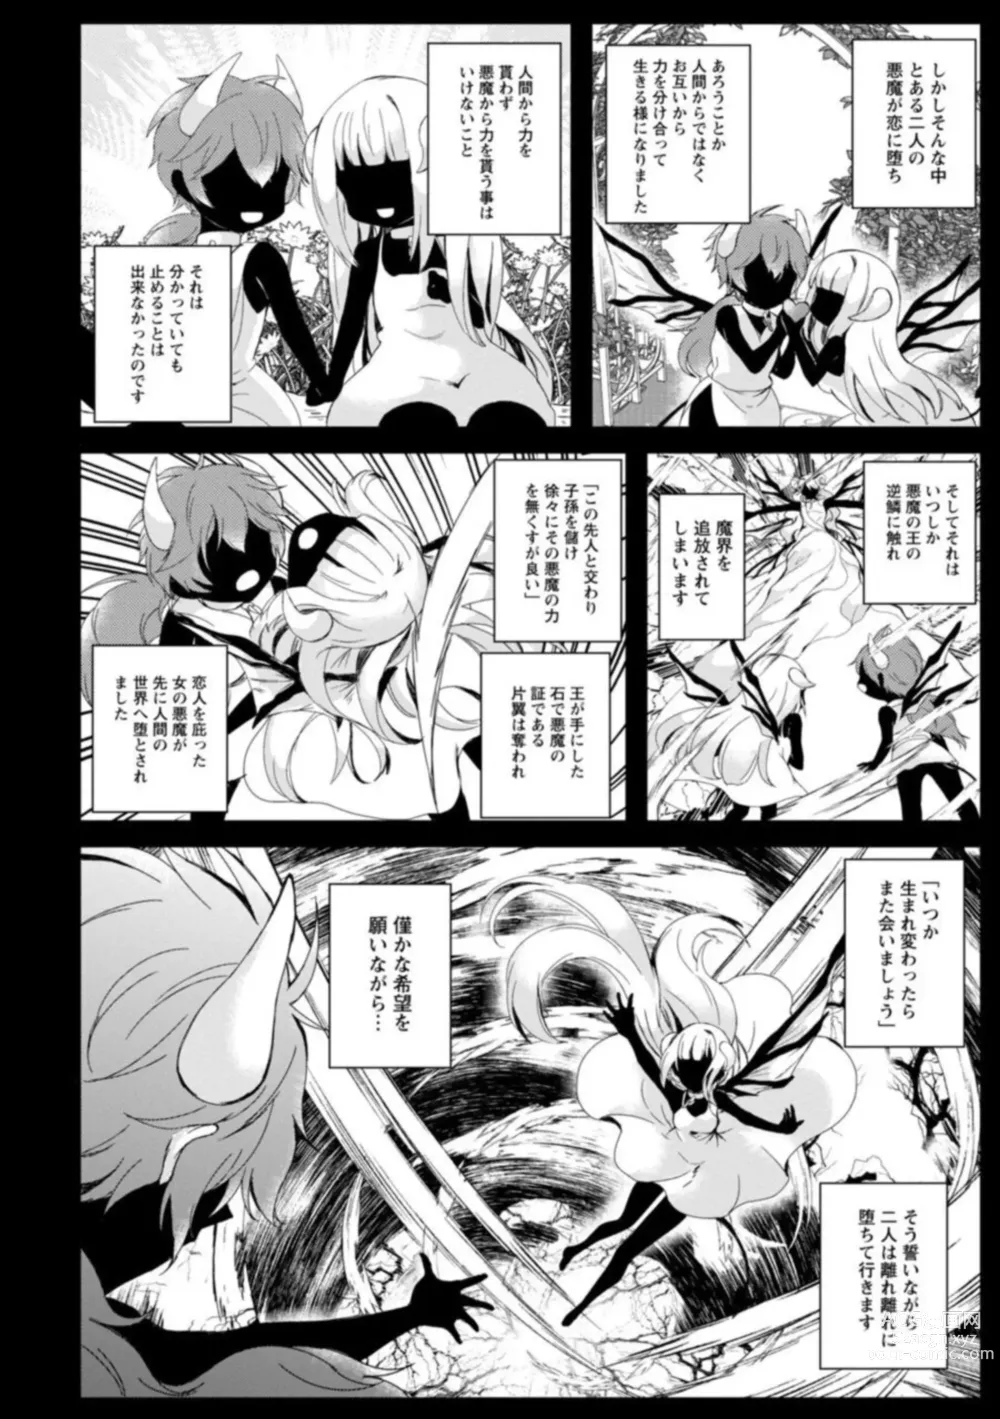 Page 4 of manga Inma no Torihiki ~ Shojonanoni oku made Sosoga re Chau! Inma no ai wa Atsuku Torokete ~ 1-2